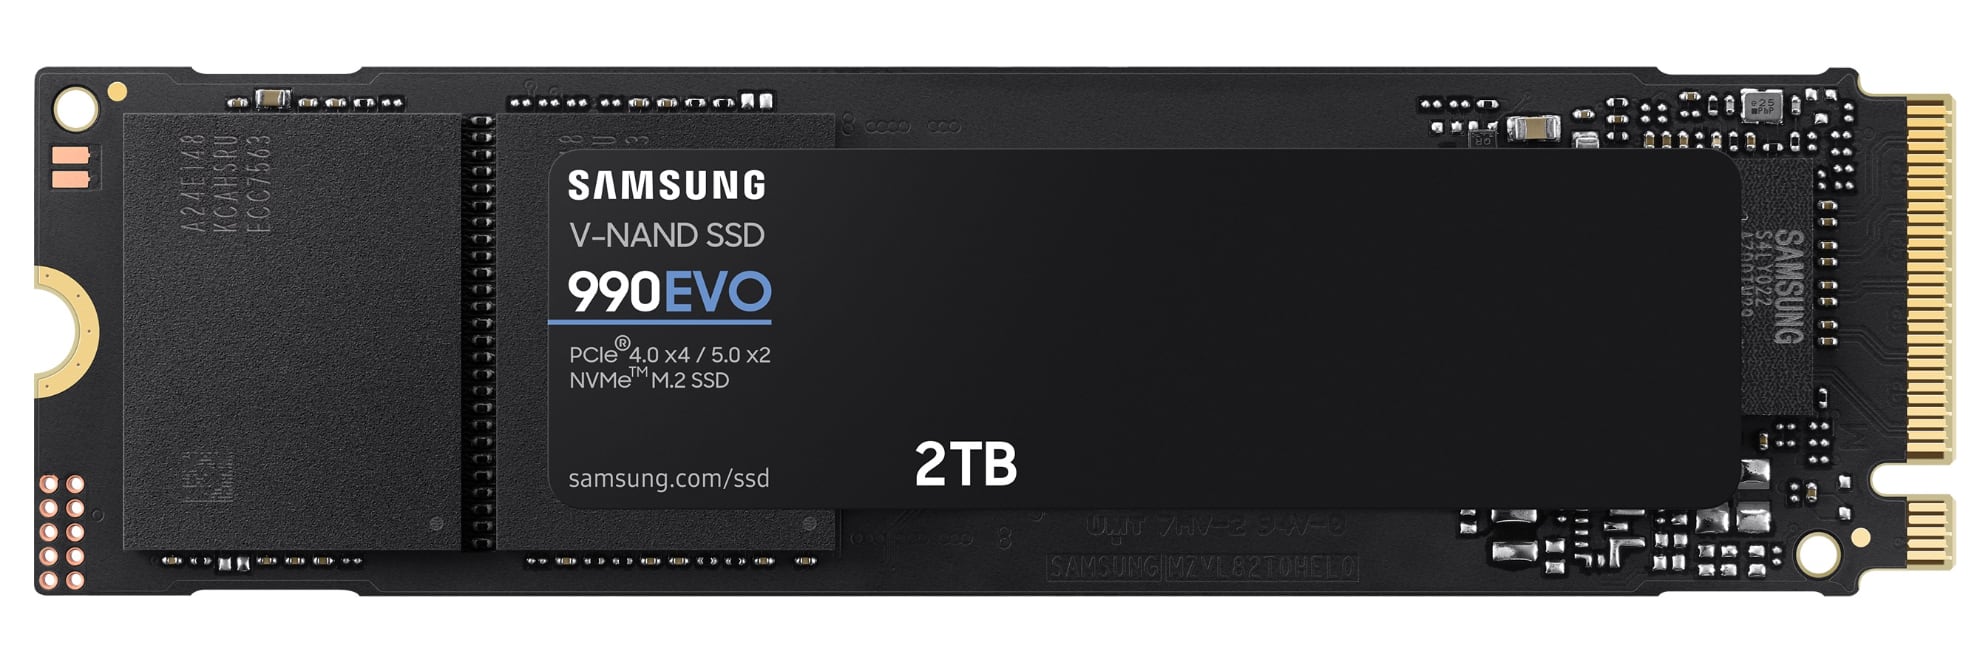 Samsung kündigt Hochgeschwindigkeits-SSD 990 EVO an, sie wird 210 Dollar für 2 TB kosten-2